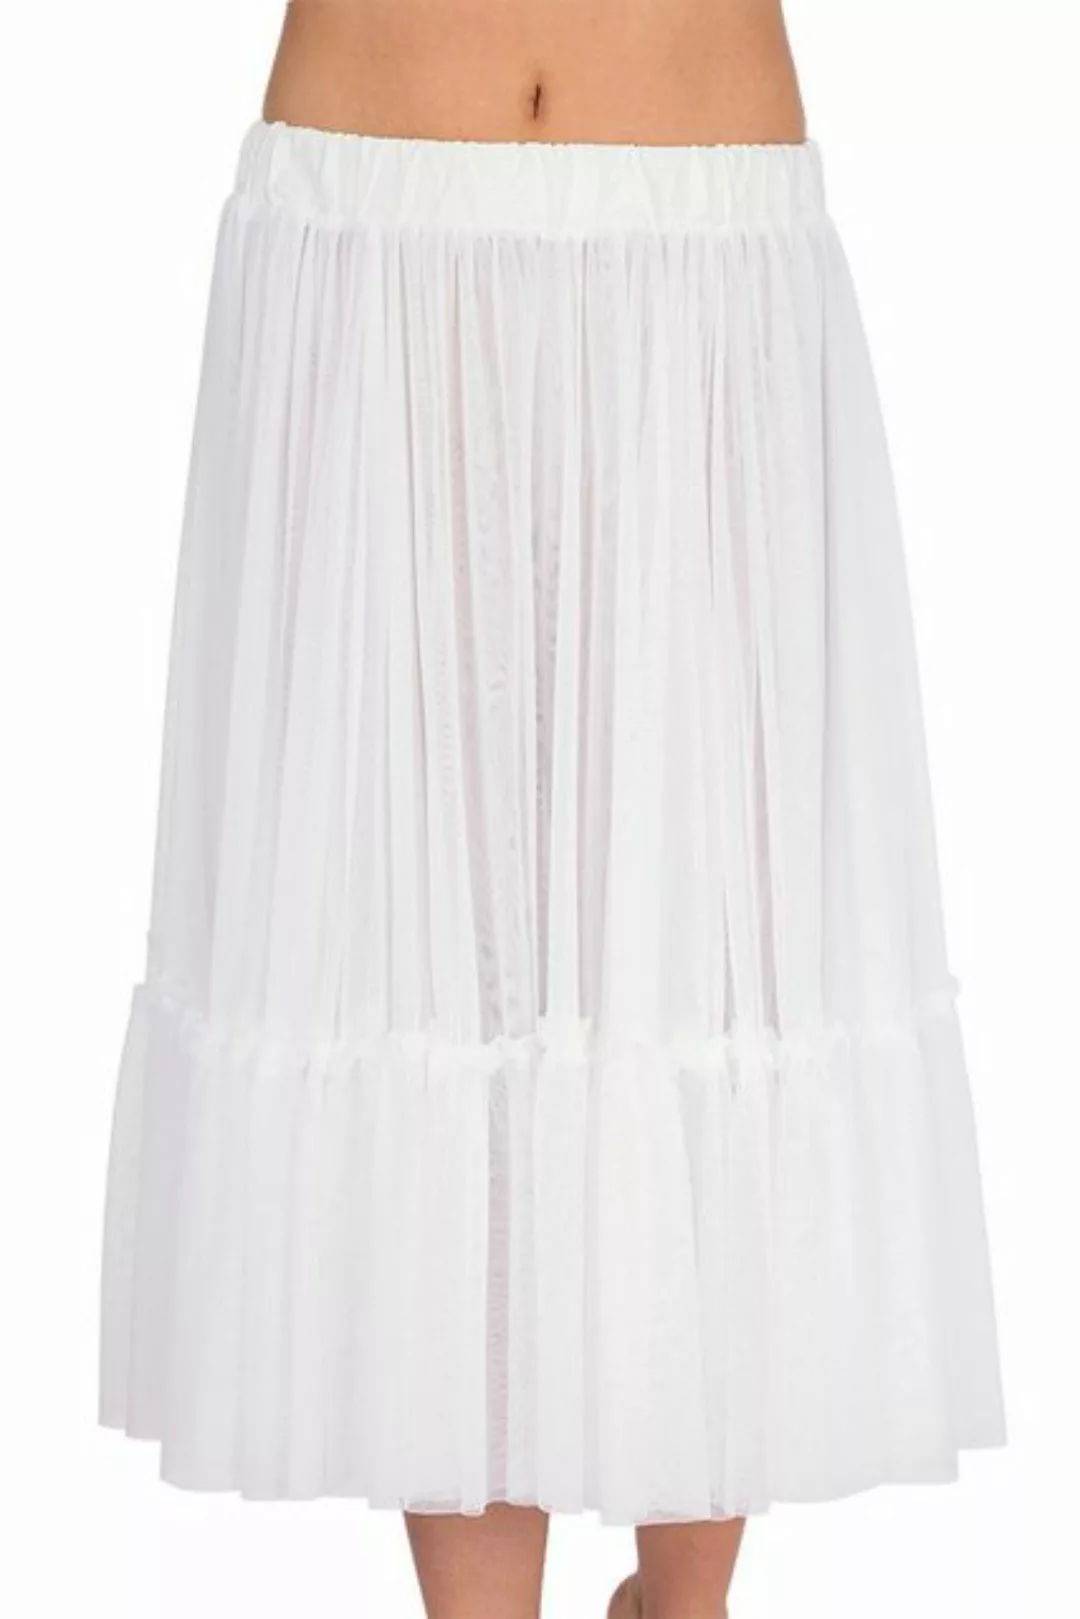 Hammerschmid Unterrock Dirndl Petticoat - PETTY - weiß günstig online kaufen